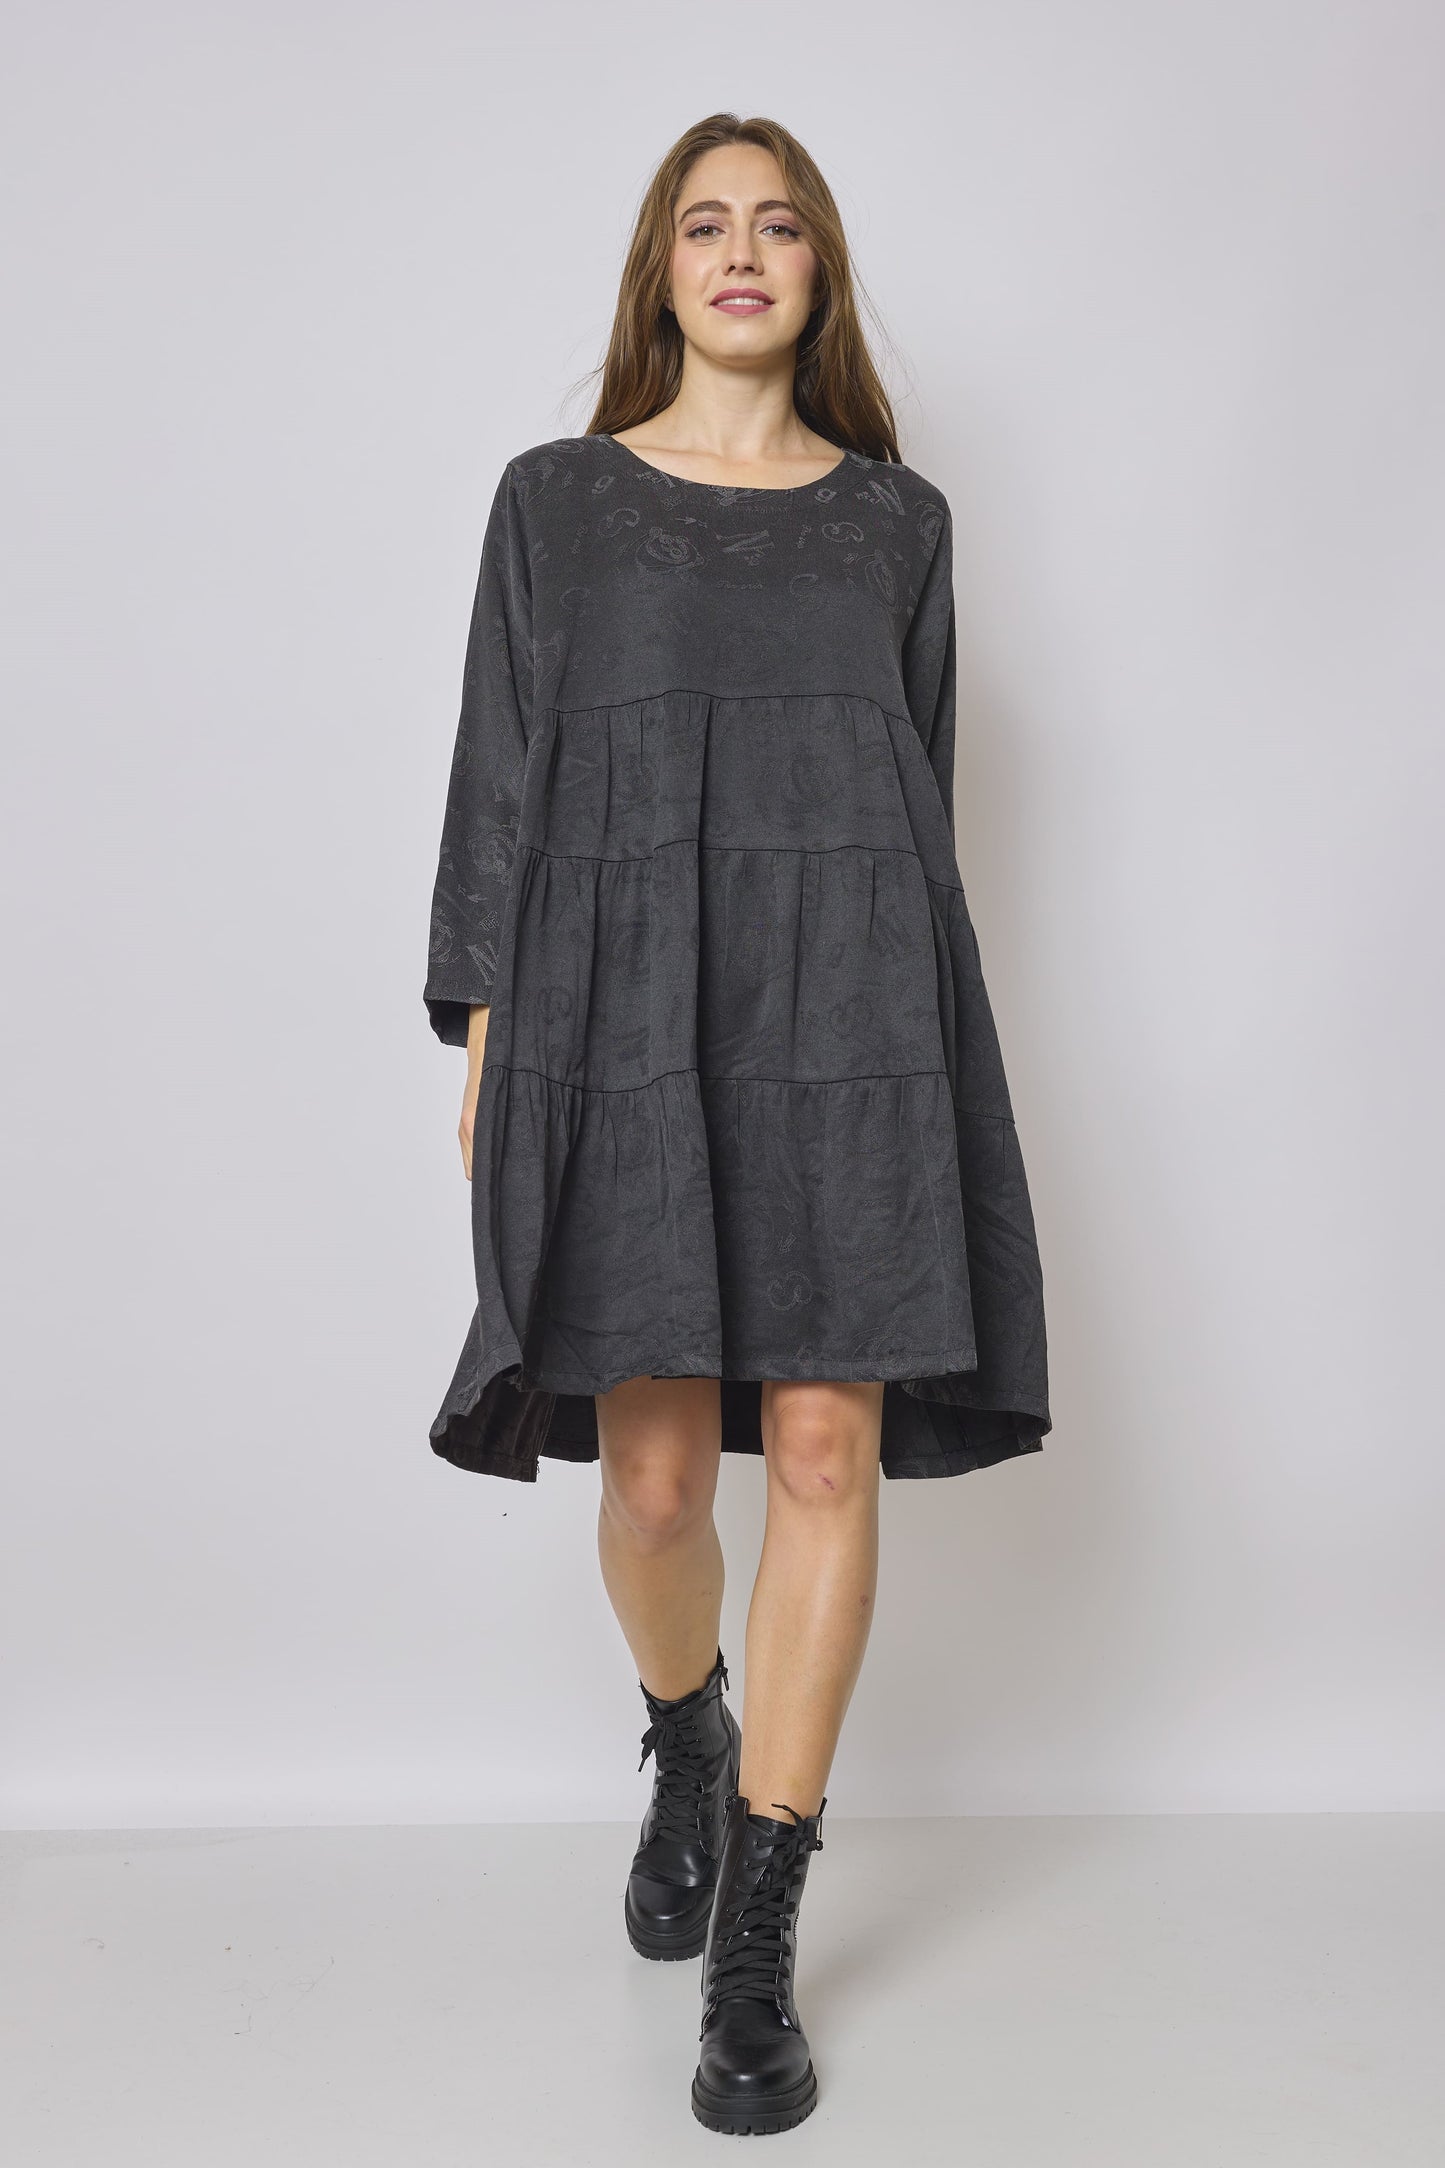 Short gray dress